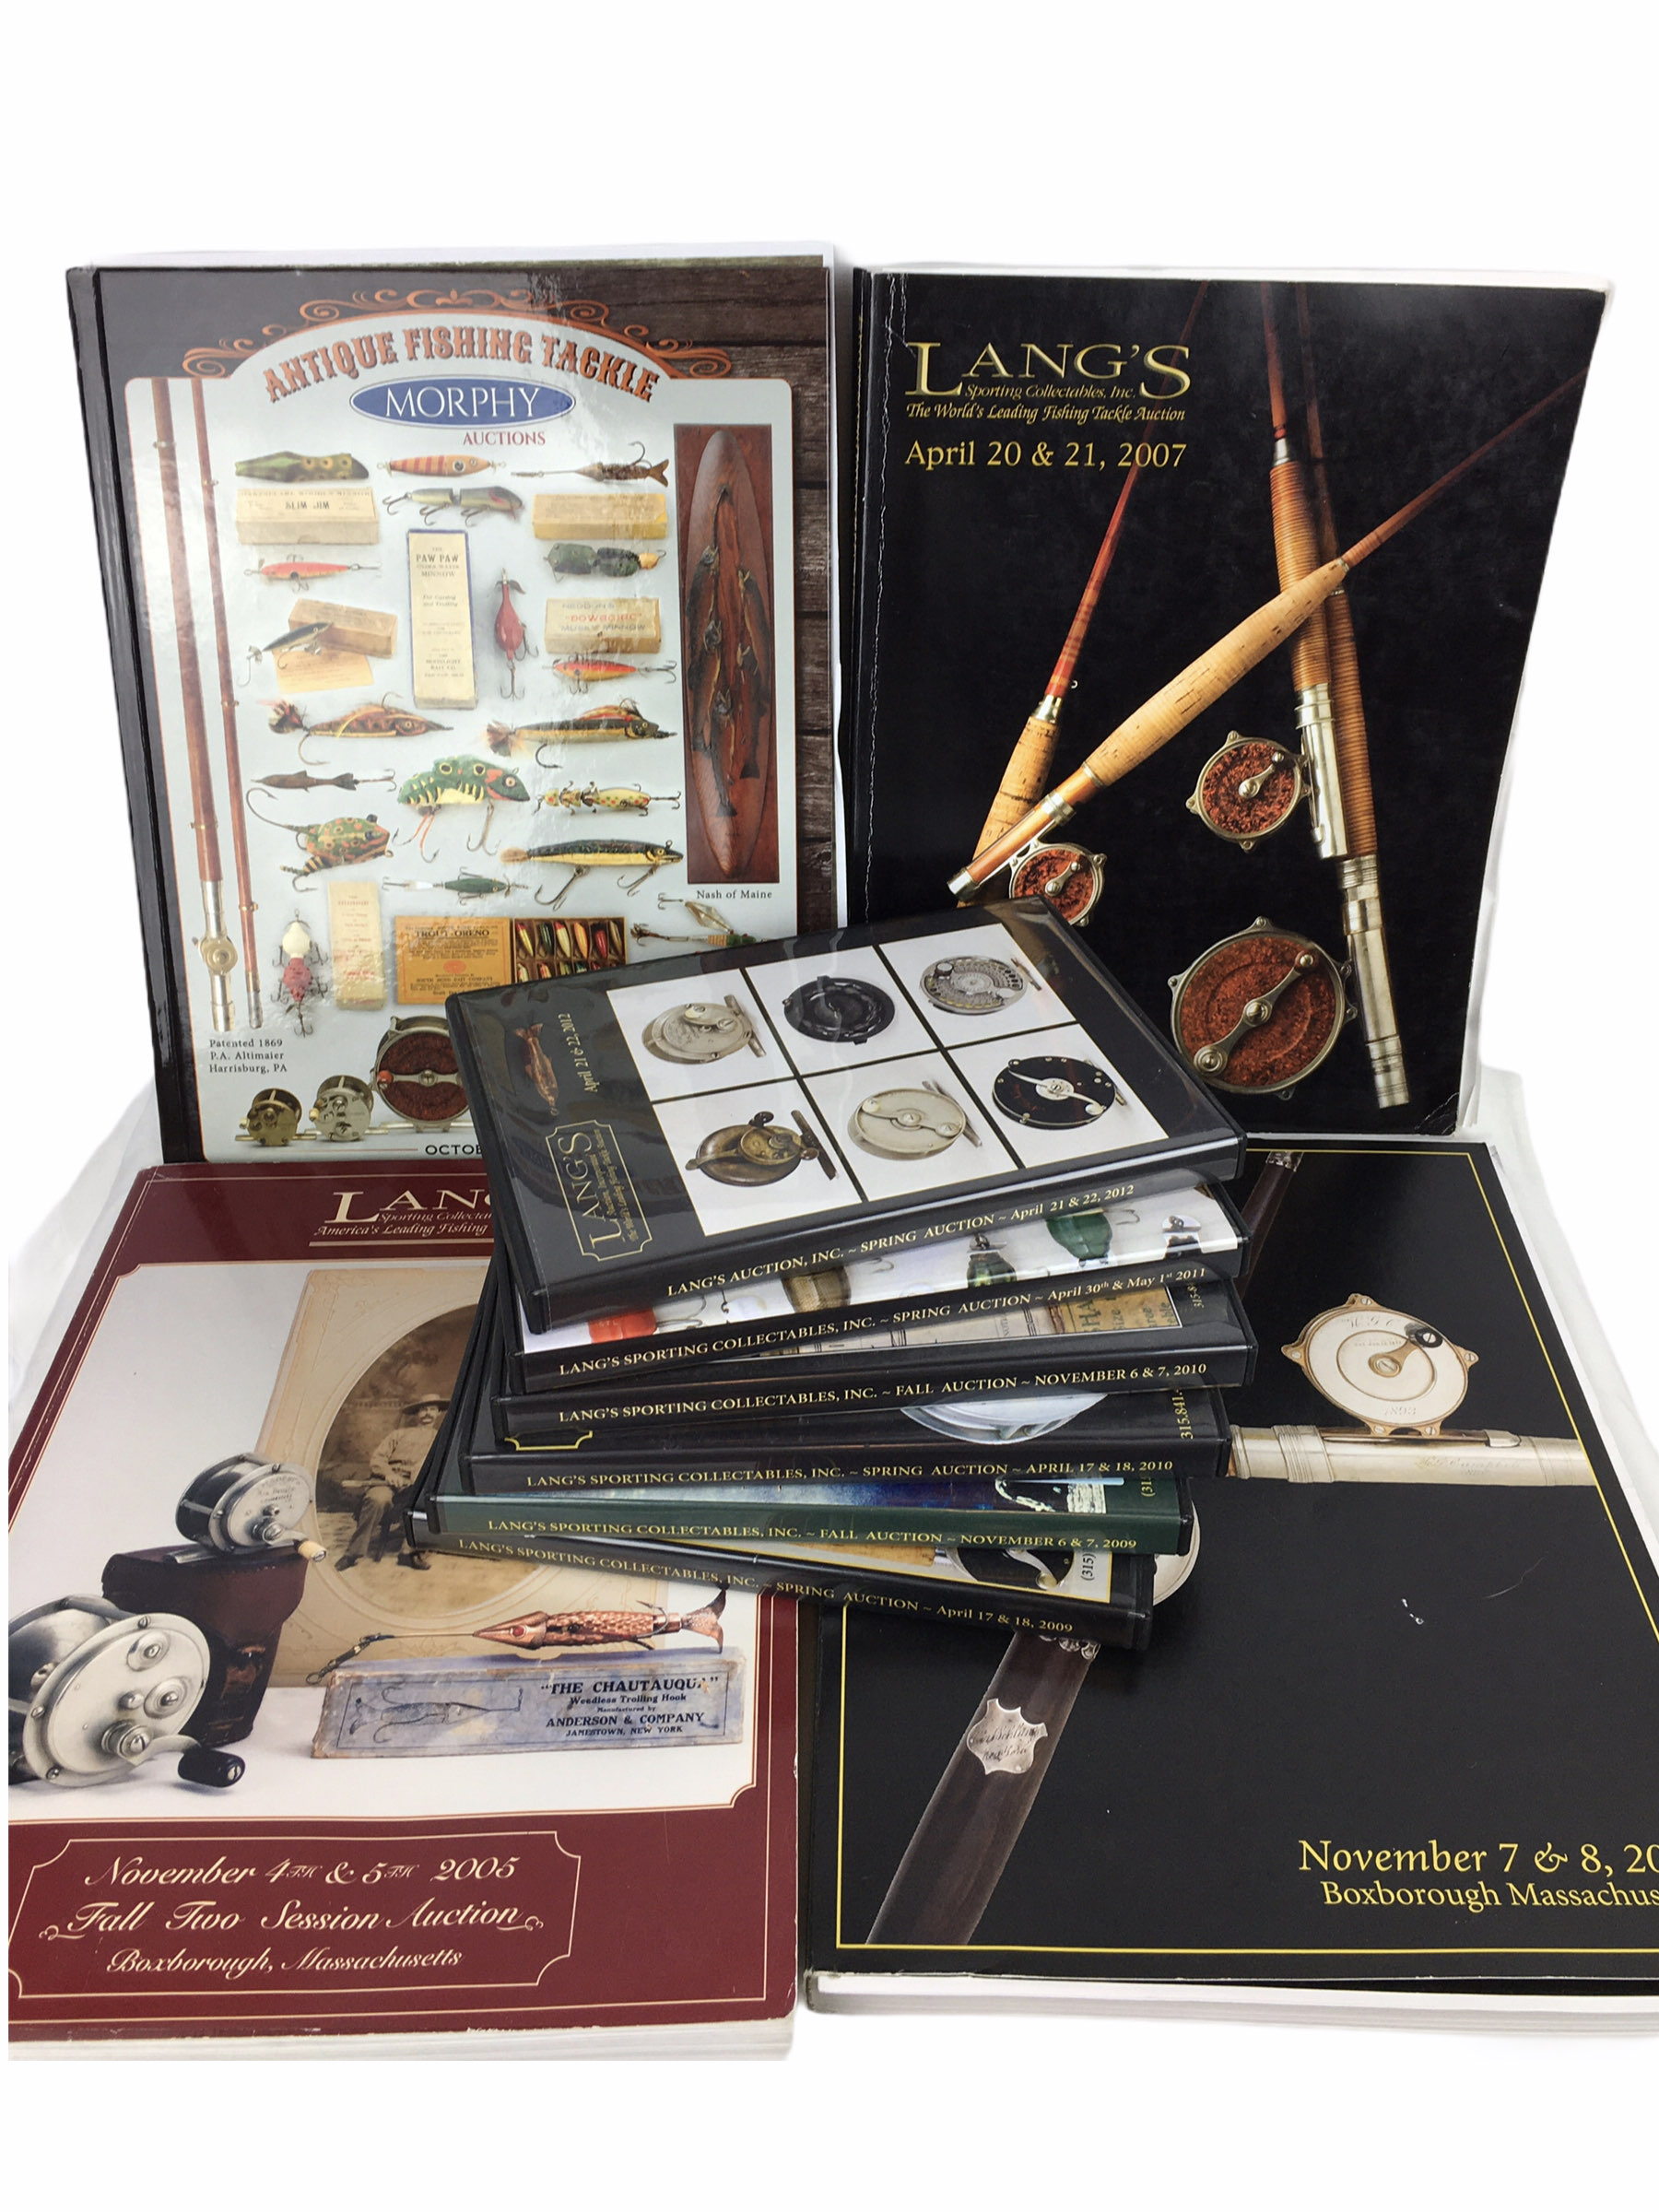 3 Langs Auction Catalogs 6 Langs Auction DVDs 